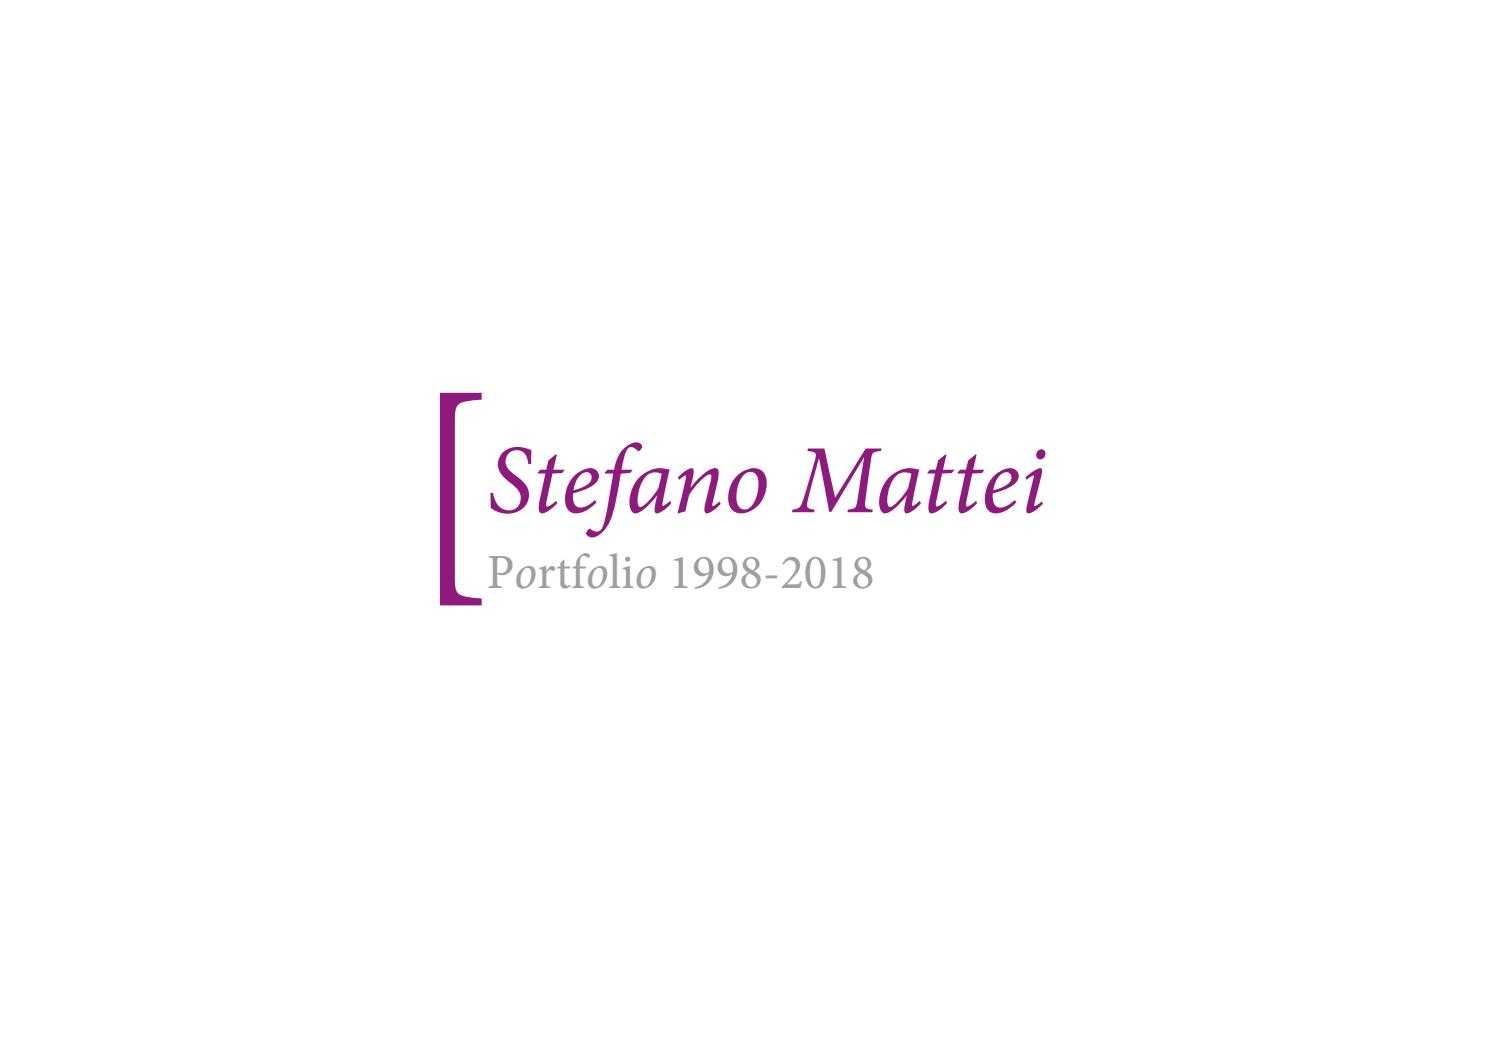 Chaton A Donner Strasbourg Best Of Portfolio Stefano Mattei 1998 2018 by Stefano Mattei issuu